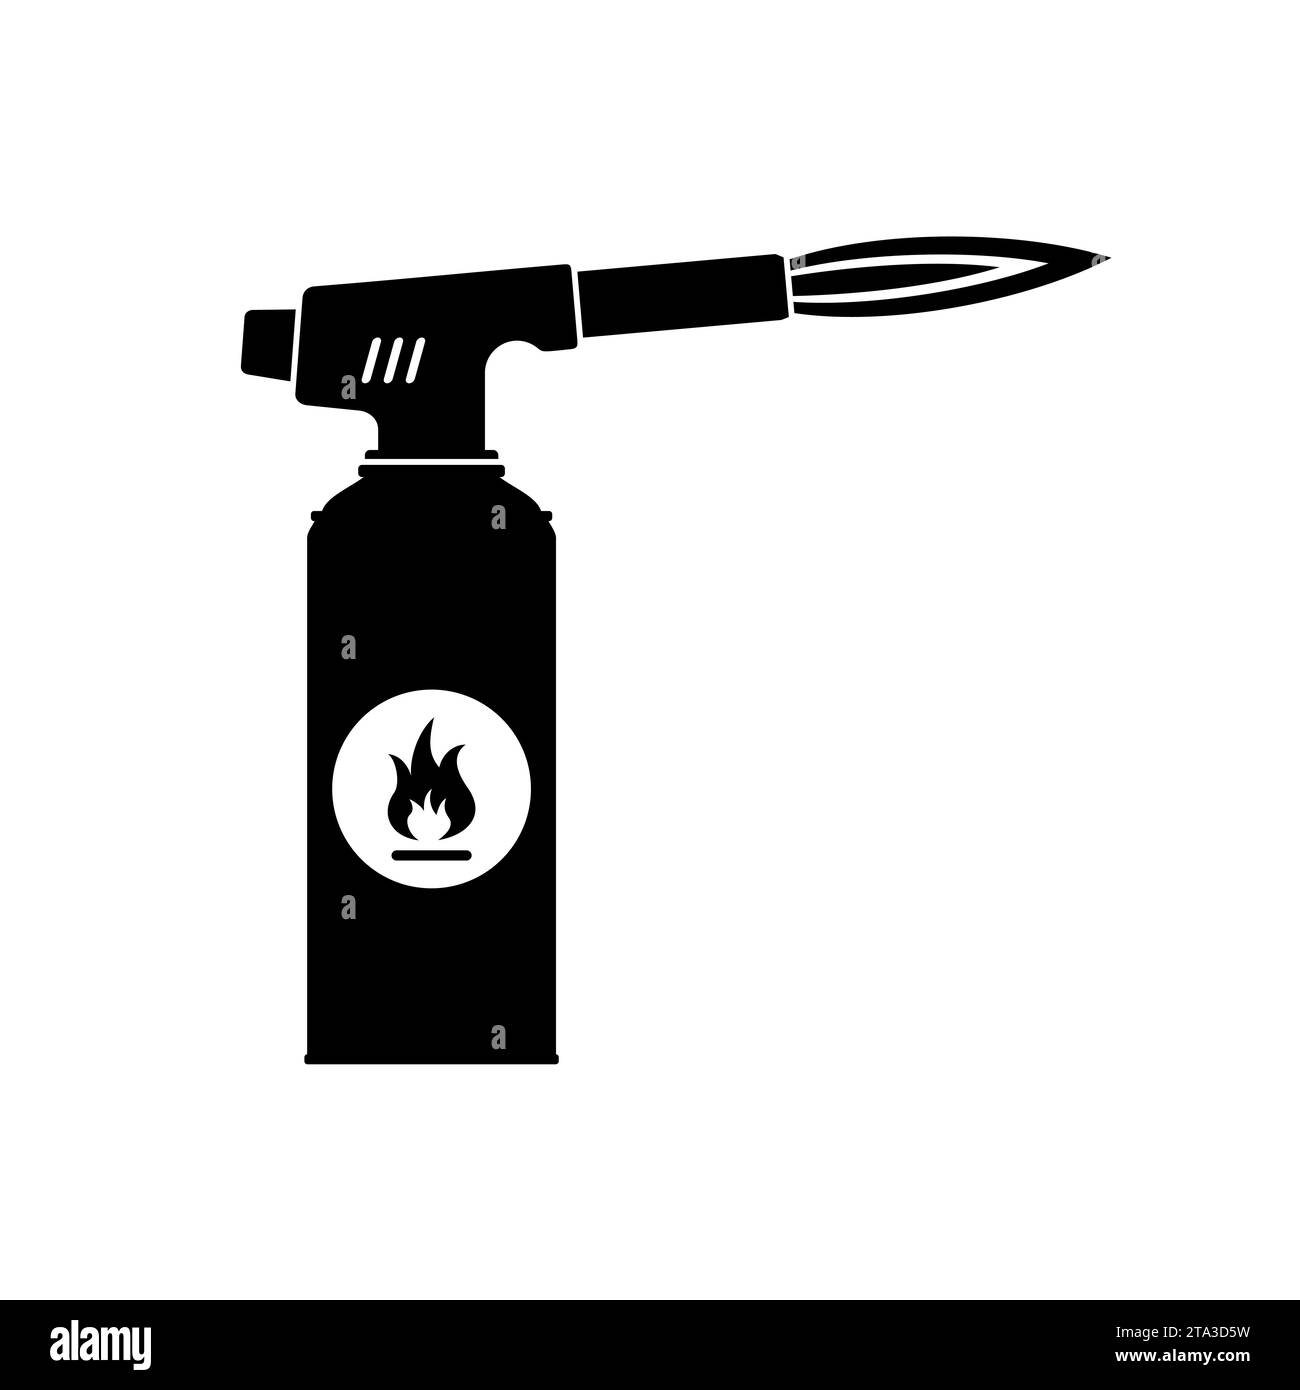 Icona della torcia elettrica con fiamma isolata su sfondo bianco. Bruciatore manuale per cannello a gas, utensile per fiamma di saldatura. Illustrazione vettoriale. Illustrazione Vettoriale